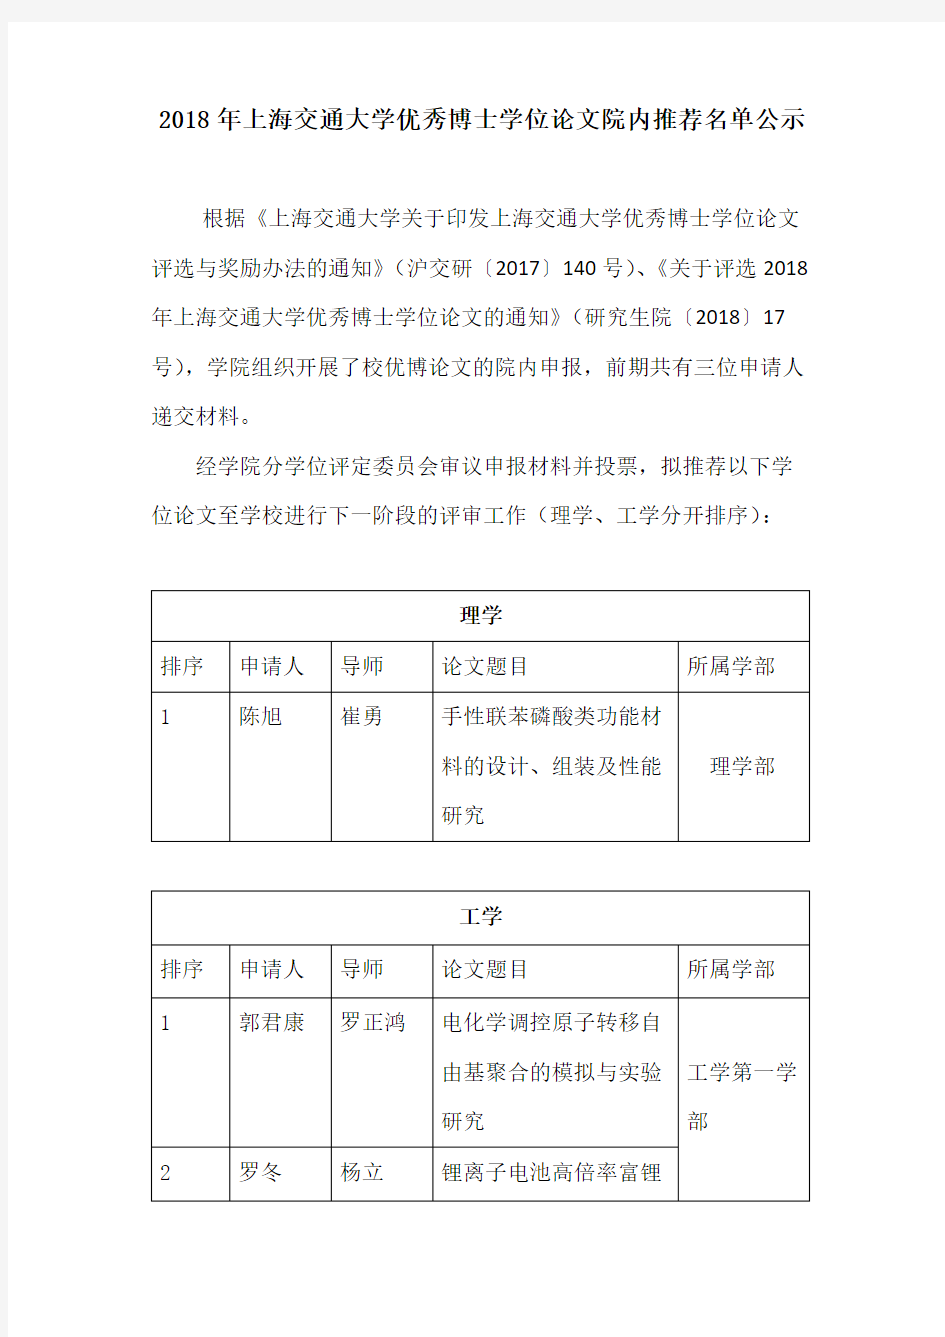 2018 年上海交通大学优秀博士学位论文院内推荐名单公示